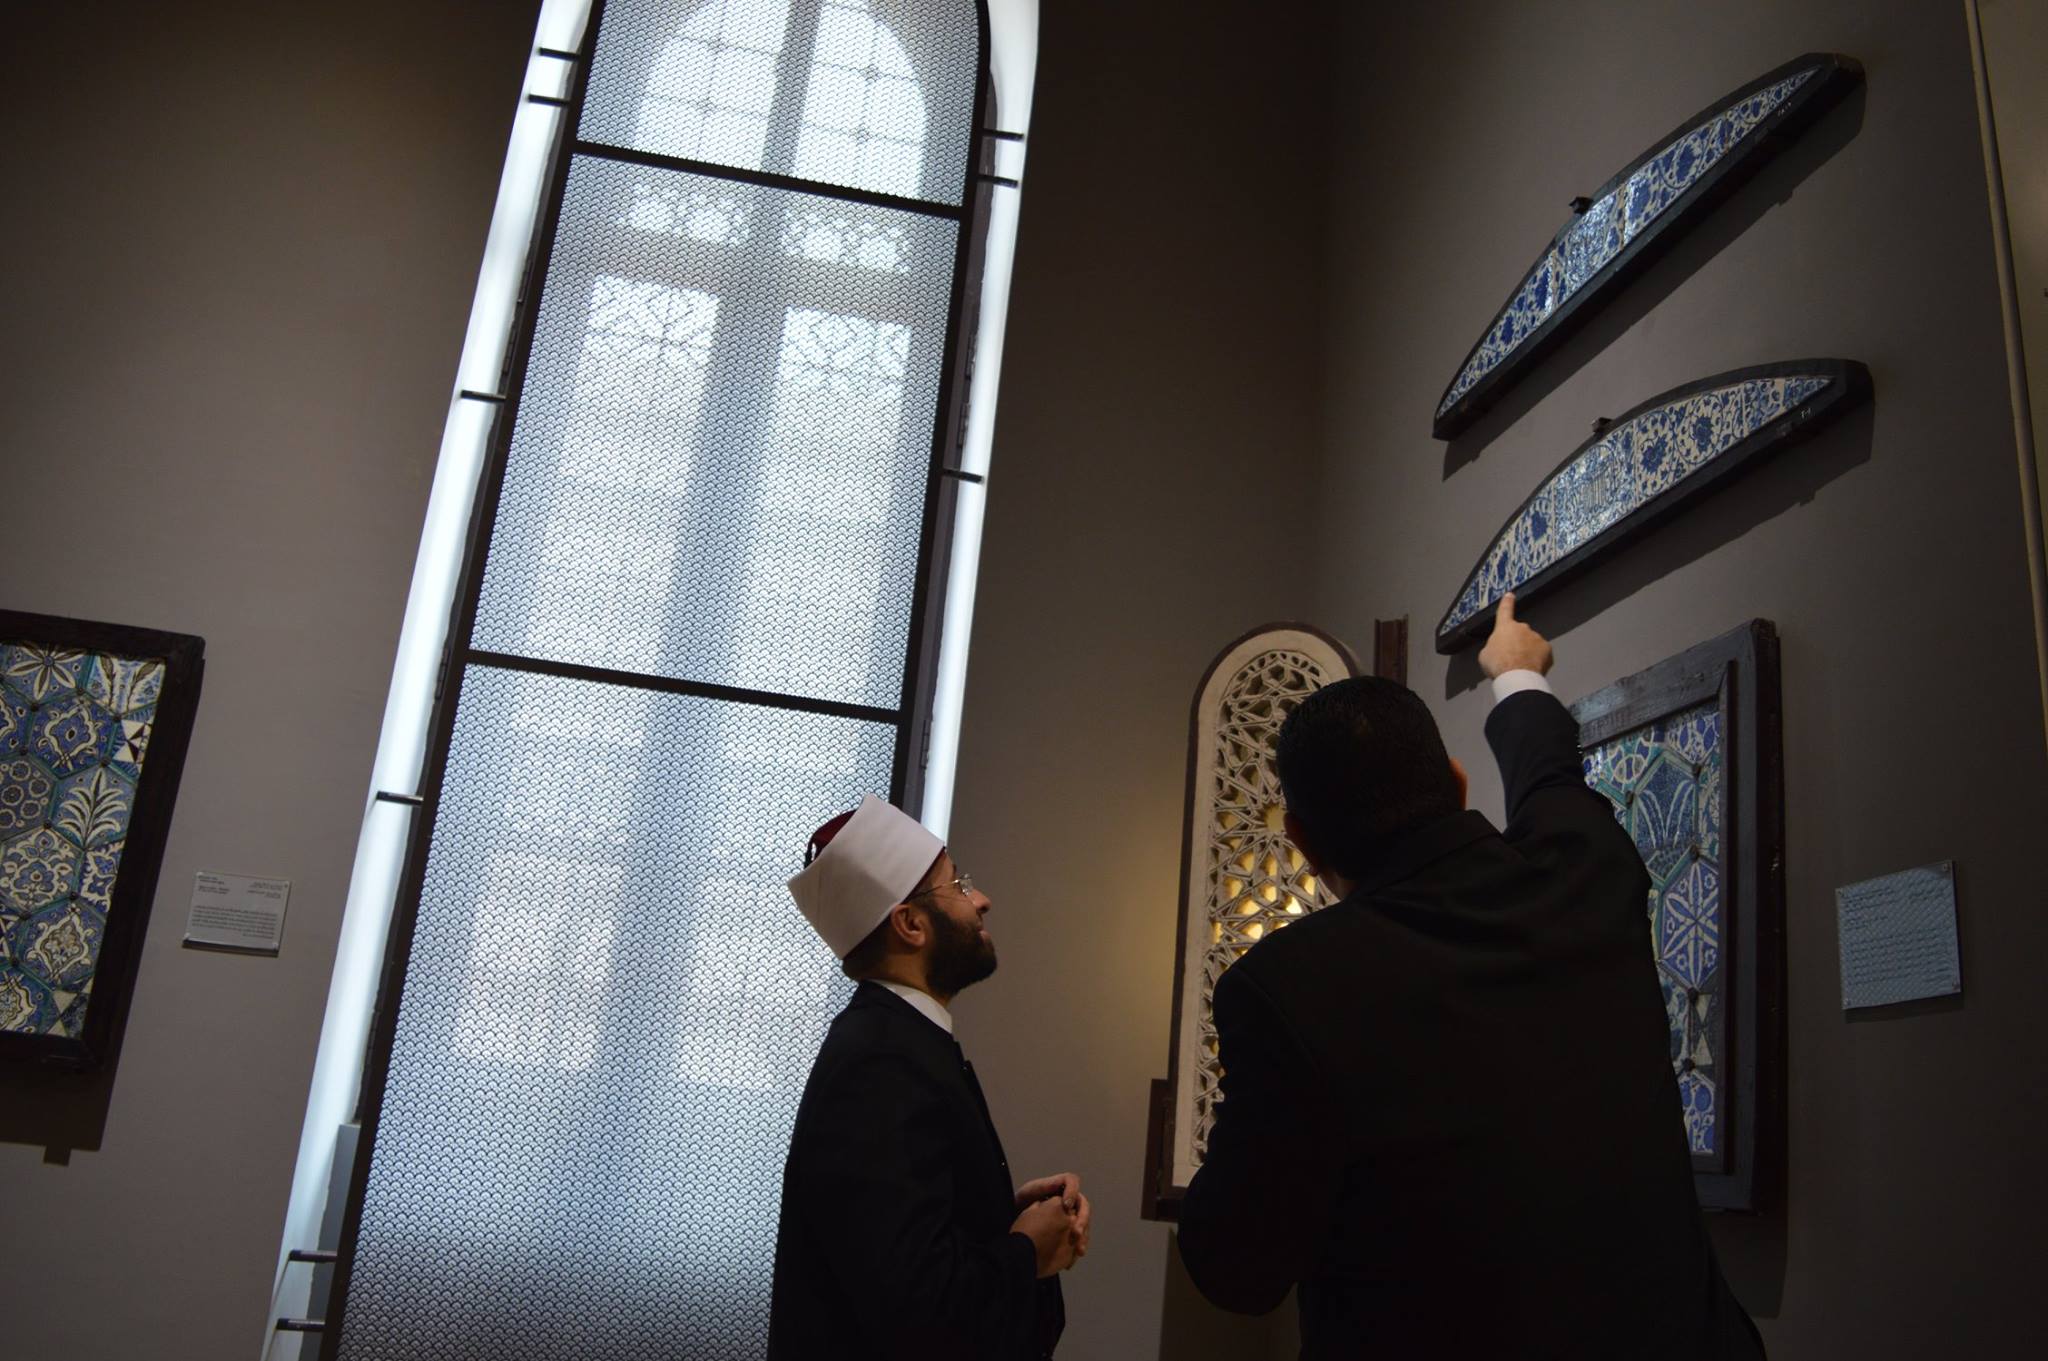 الدكتور أحمد الشوكى المشرف العام على المتحف يشرح للشيخ أسامة  تاريخ المقتنيات